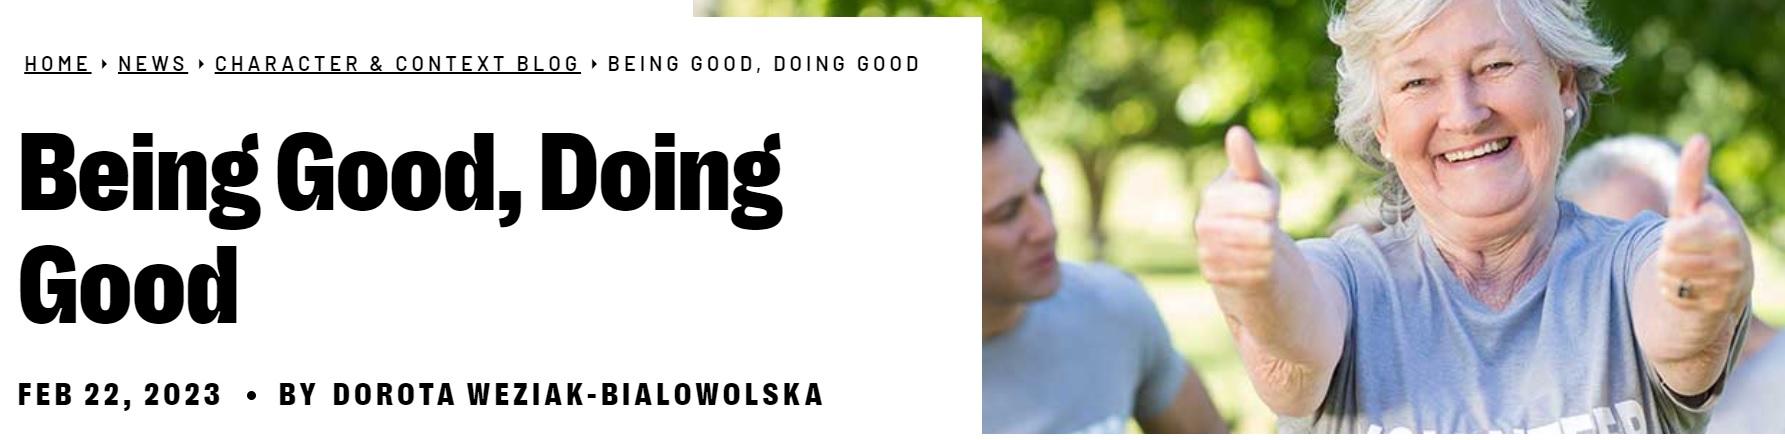 Being Good, Doing Good [streszczenie badań prof. Doroty Węziak-Białowolskiej]